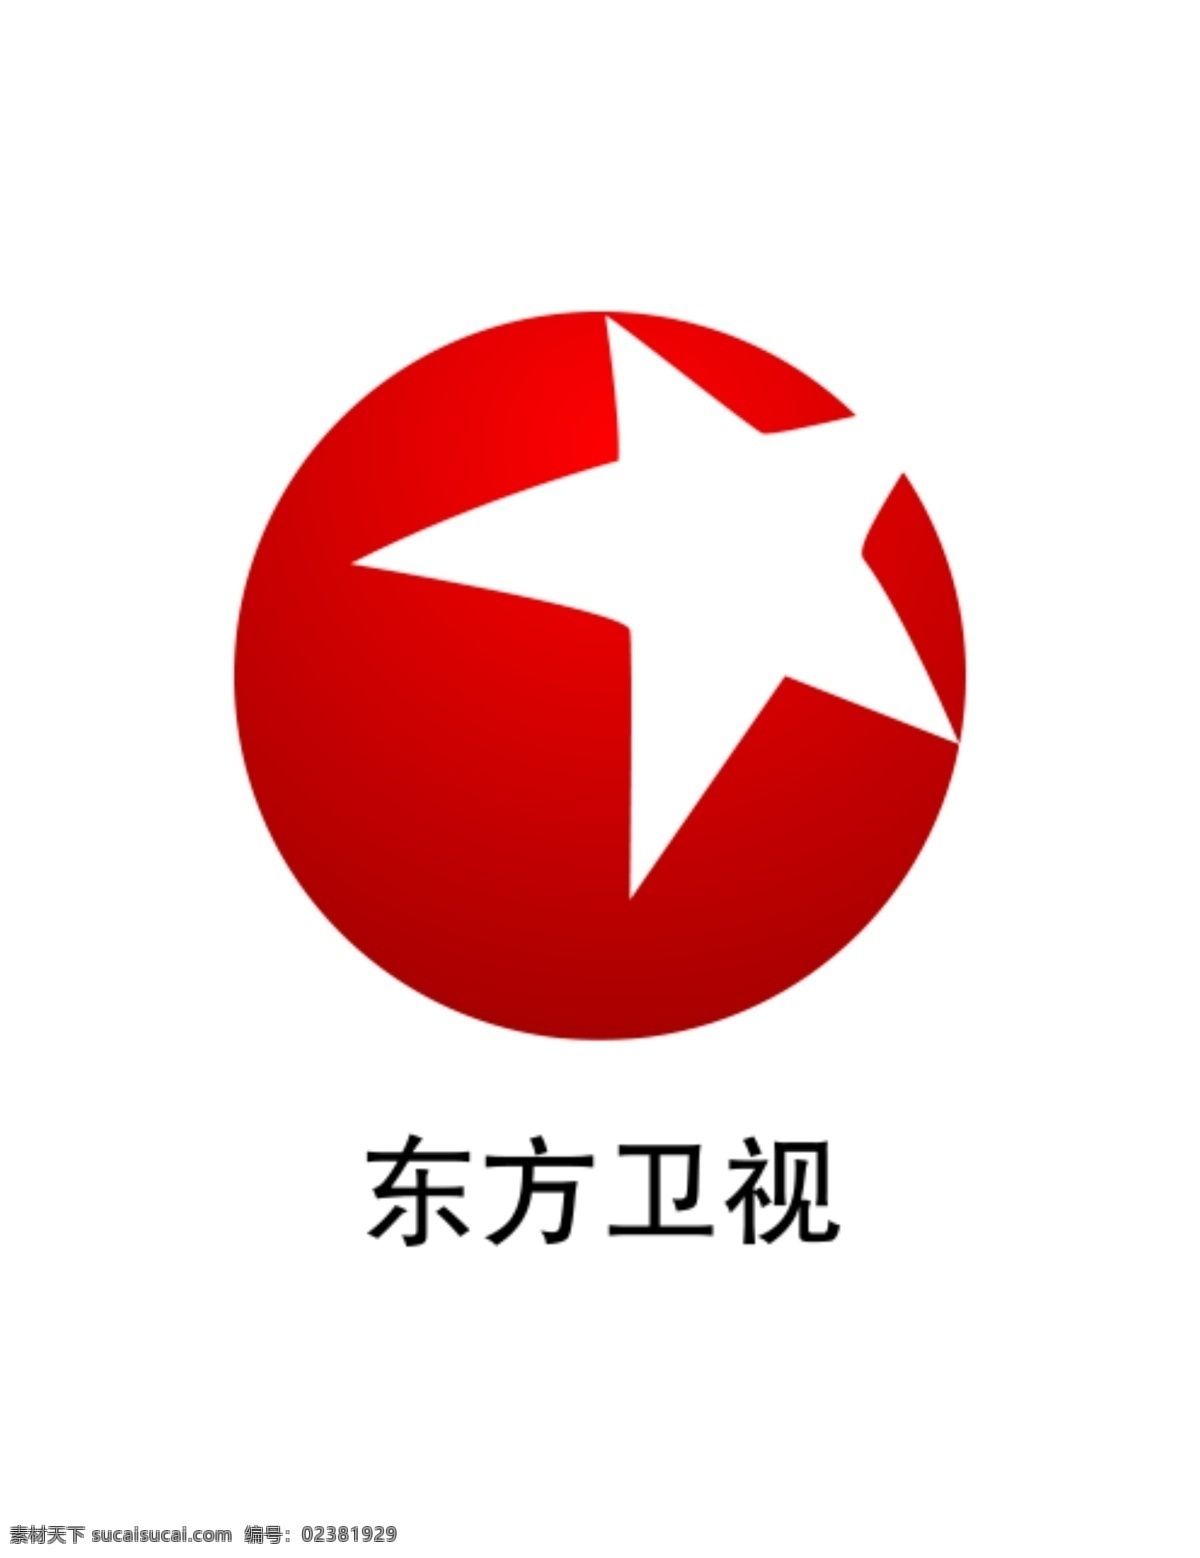 东方卫视 logo 东方卫视标志 东方卫视台标 东方台标 东方电视台